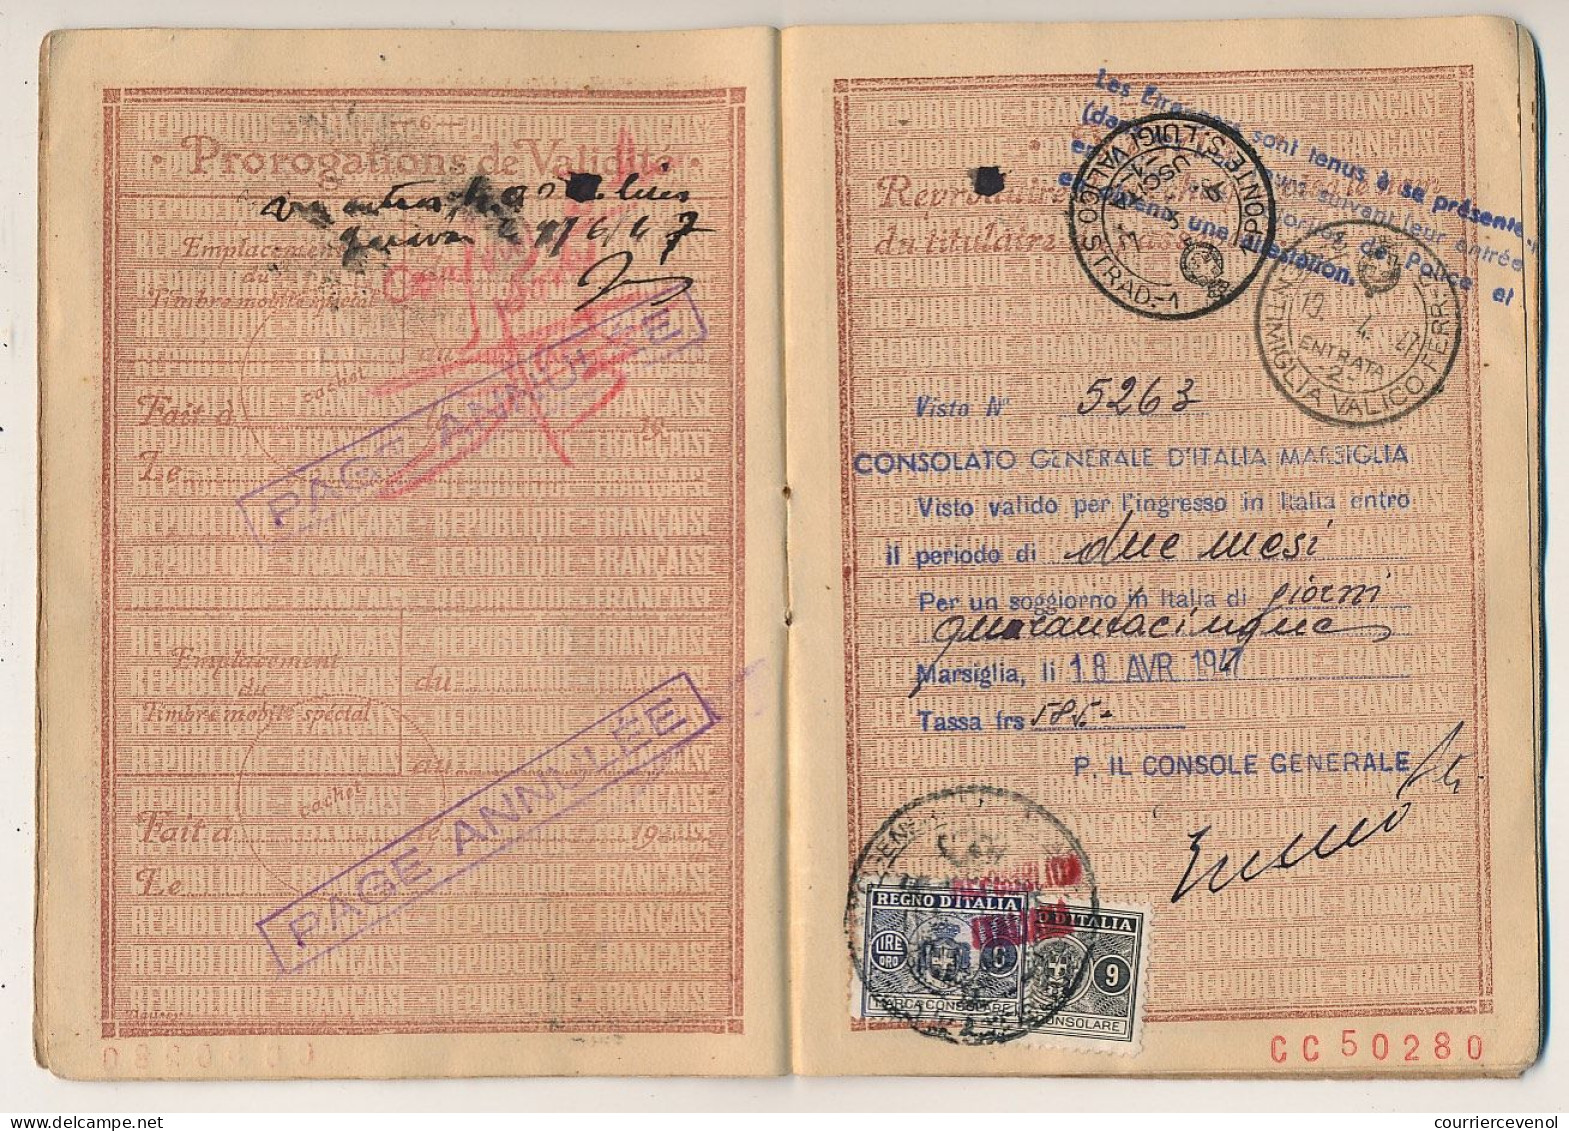 FRANCE - Passeport délivré à NICE - 1949/1951 - 60F + complément tarif 1946 / Fiscal renouvellement 700 F + visas divers